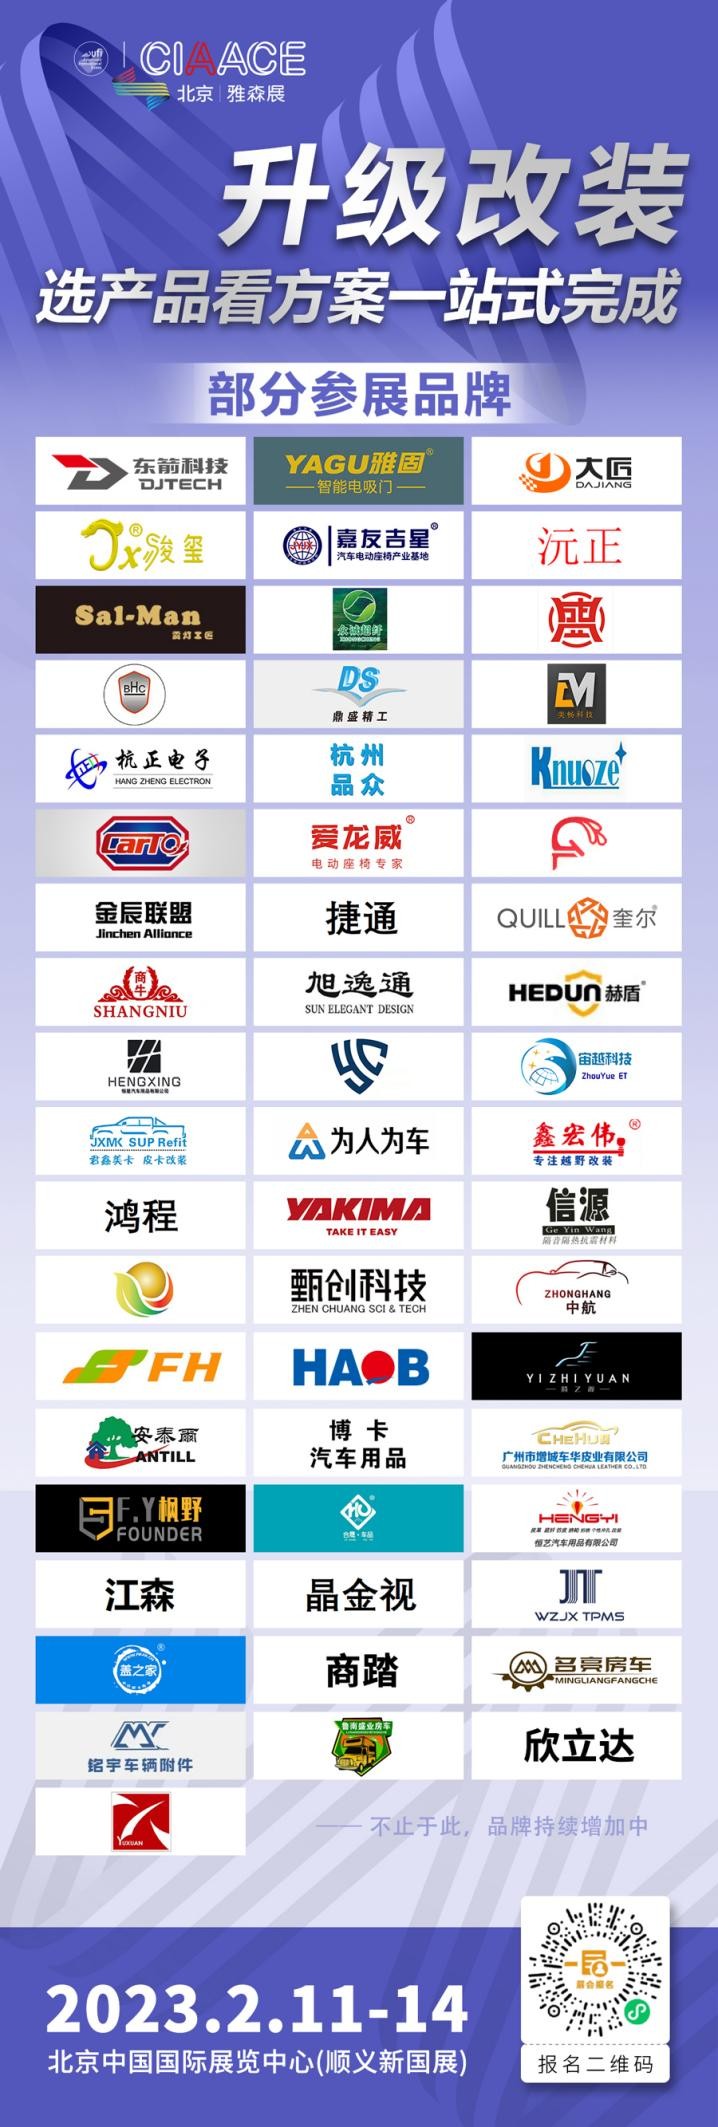 打造价值高地，掘金时刻即将到来丨第32届中国国际汽车服务用品及设备展览会于2月11日隆重开幕